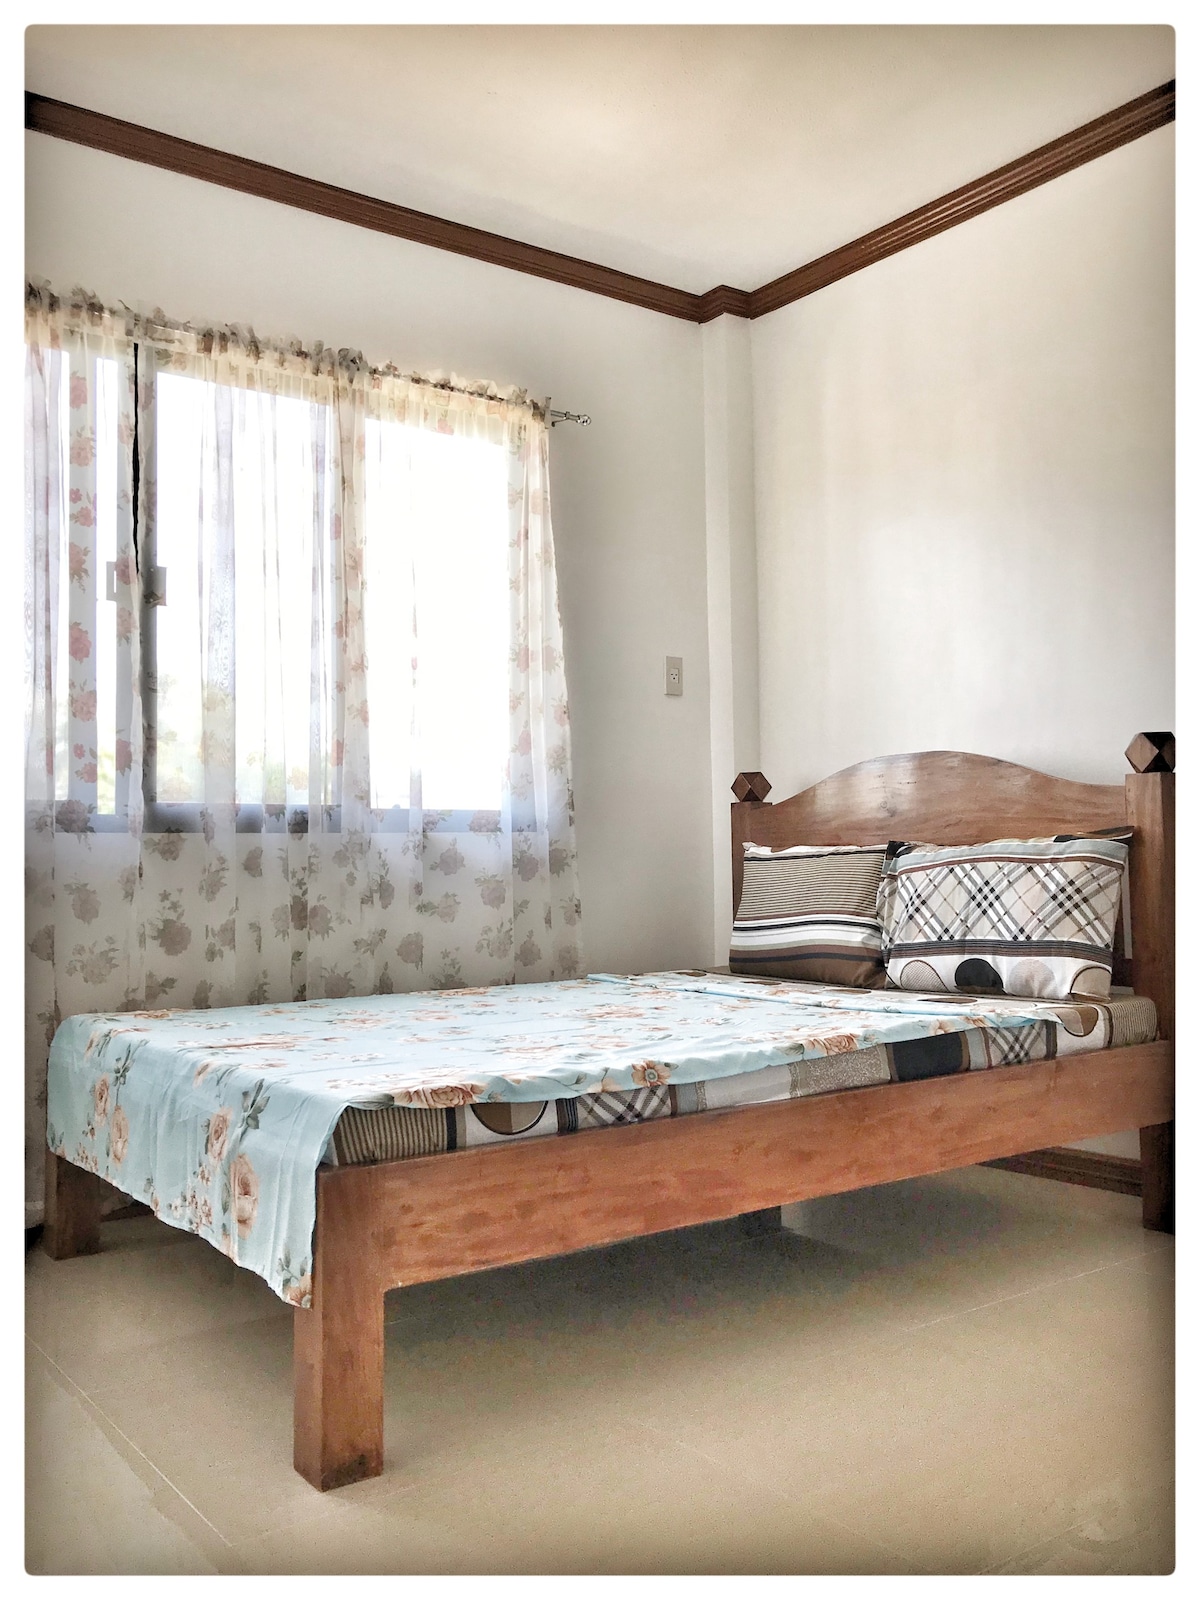 Amparo Residence, Hilongos, Leyte, Mayon Room